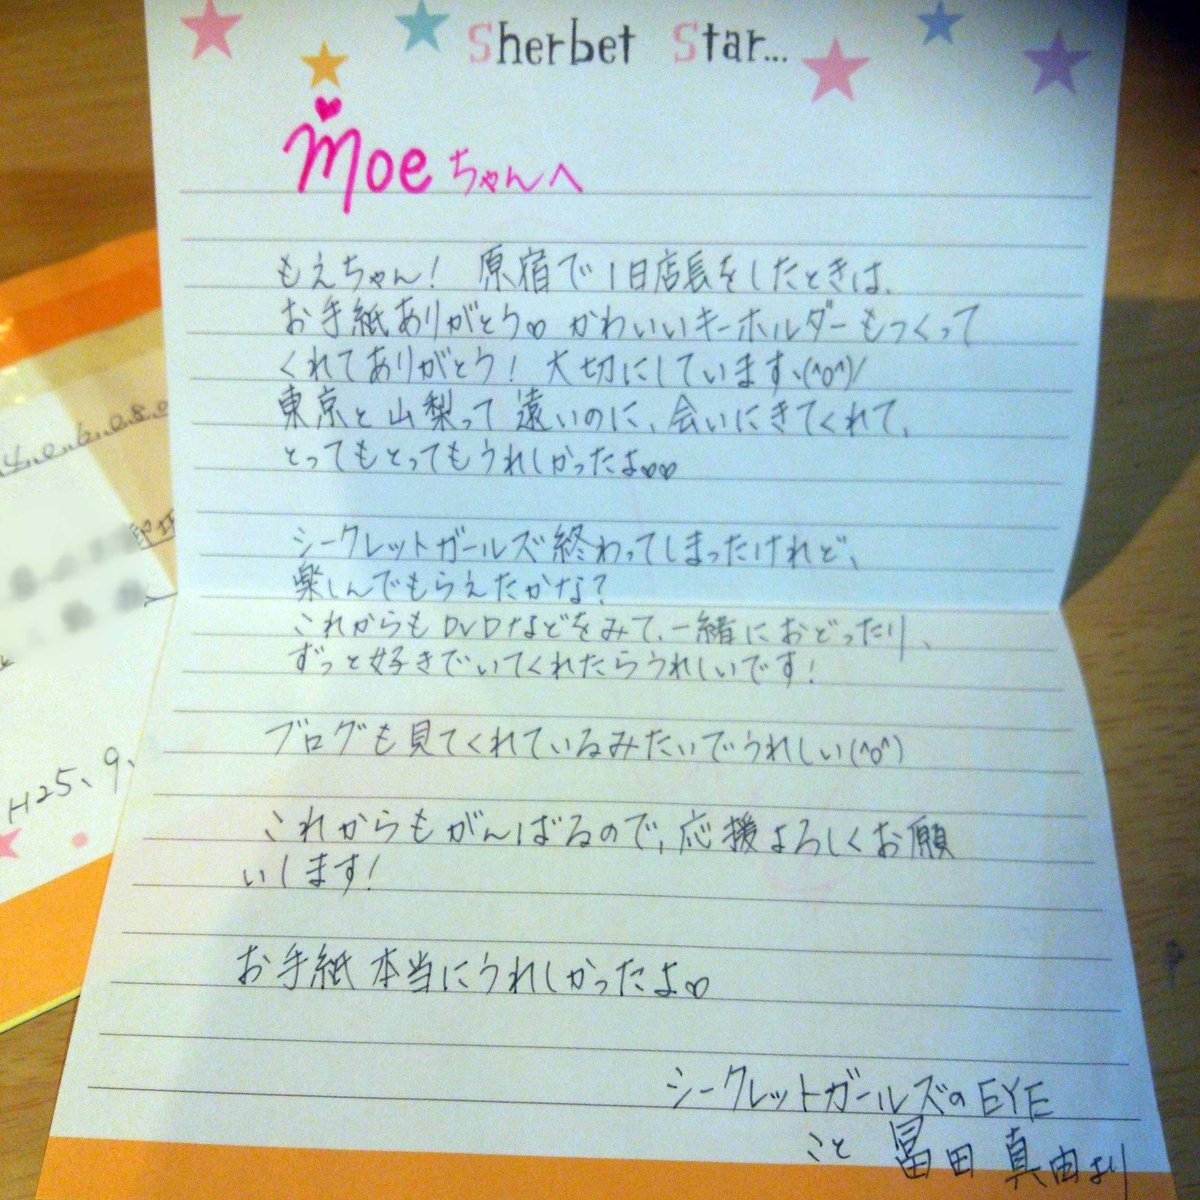 Cuusha ｲﾝｽﾀﾒｲﾝ 娘が読んでいた雑誌ちゃおの付録についていたｄｖｄのシークレットガーズルのeye役だった冨田真由 さん 娘のプレゼントにも丁寧に手紙をくれたすごく優しい子 早く元気になって